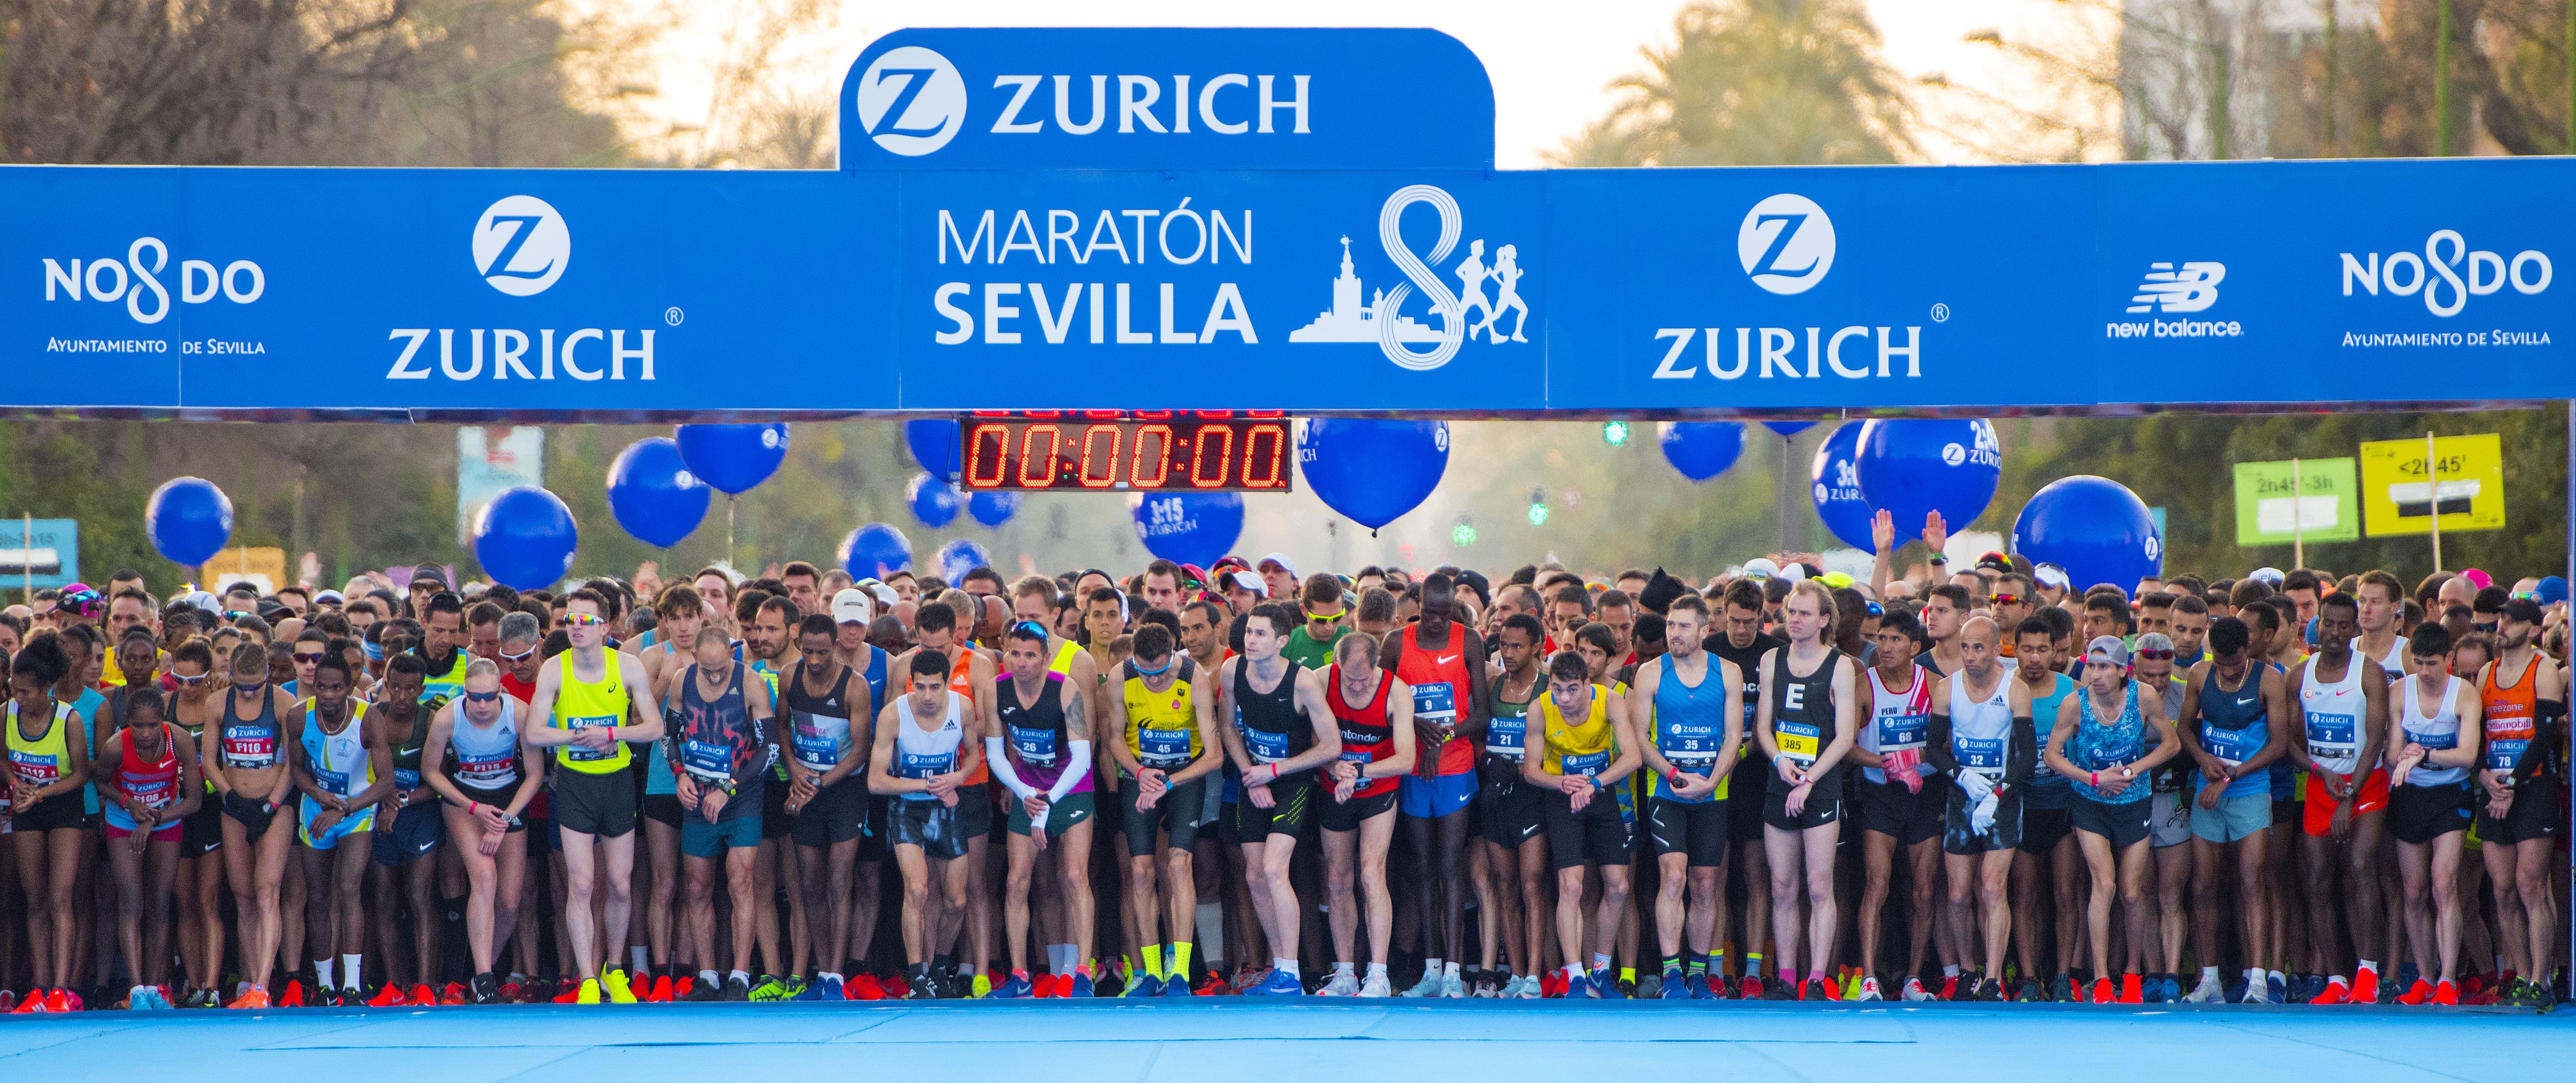 Zurich también da nombre al Maratón de Sevilla.